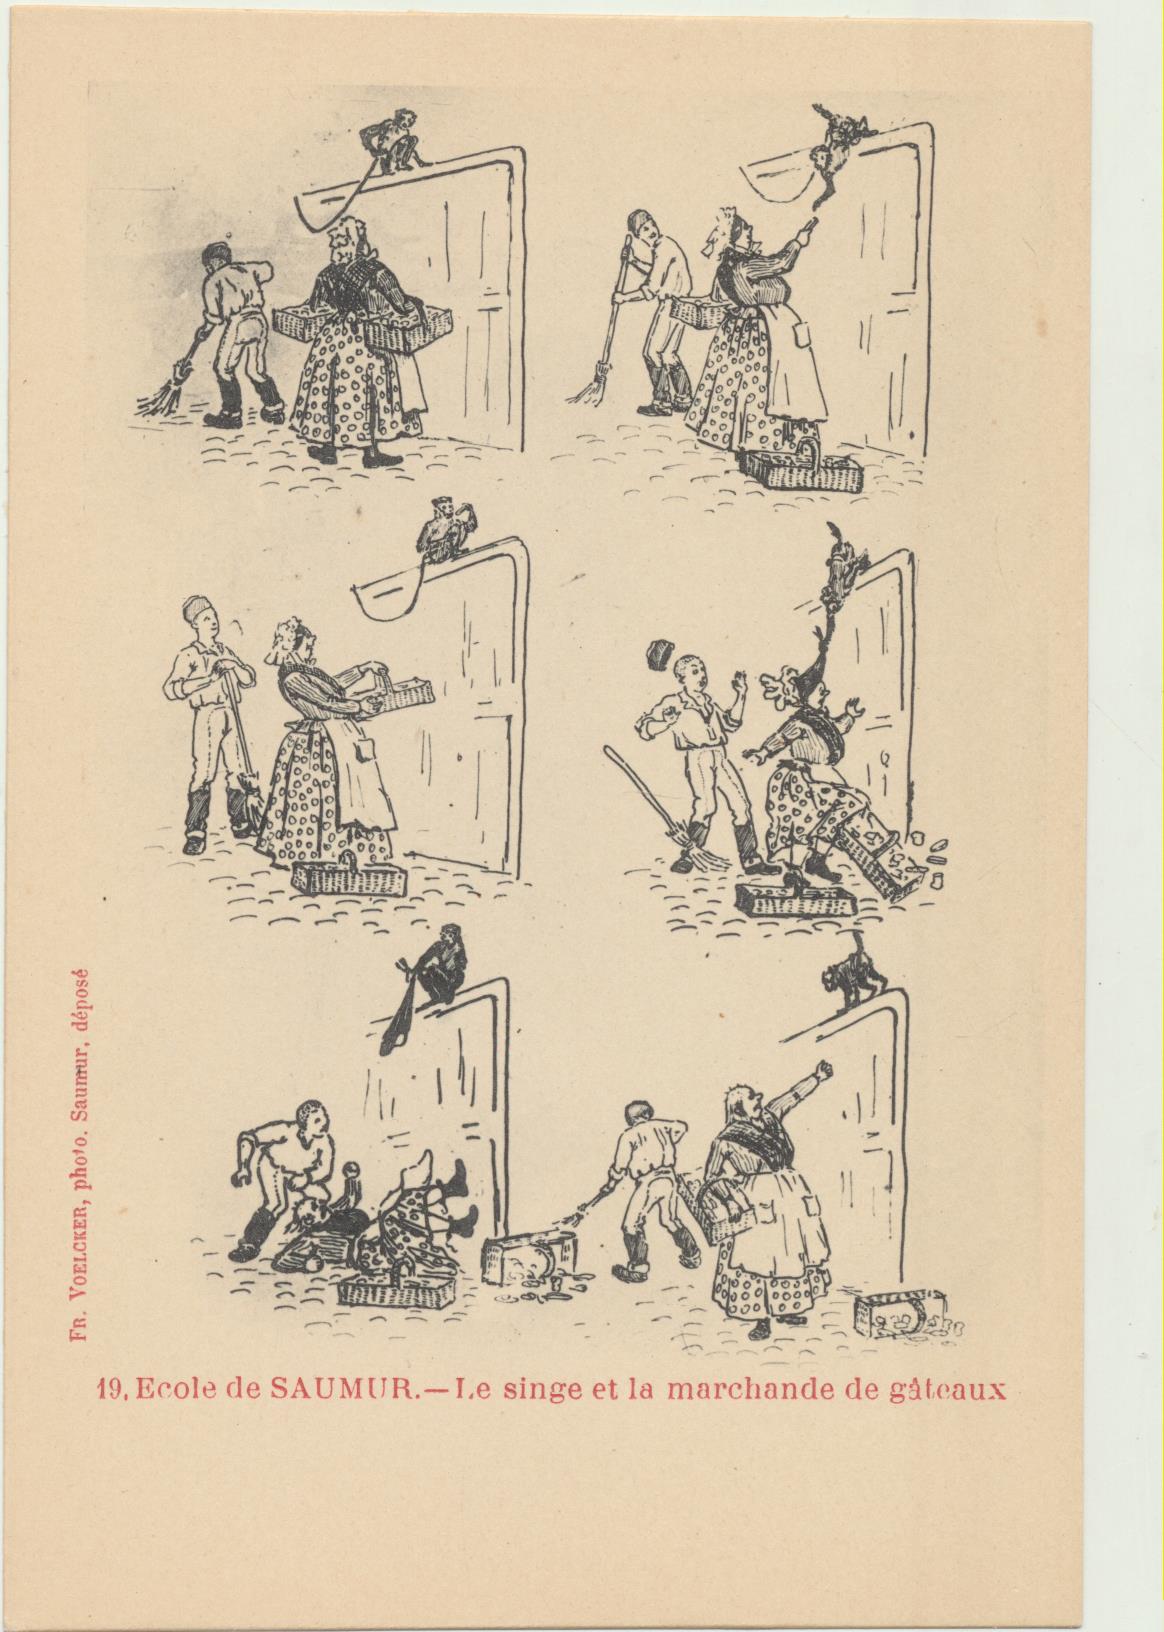 EcOlé de Saumur. Le singe et la marchande de gateaux. Anterior a 1905